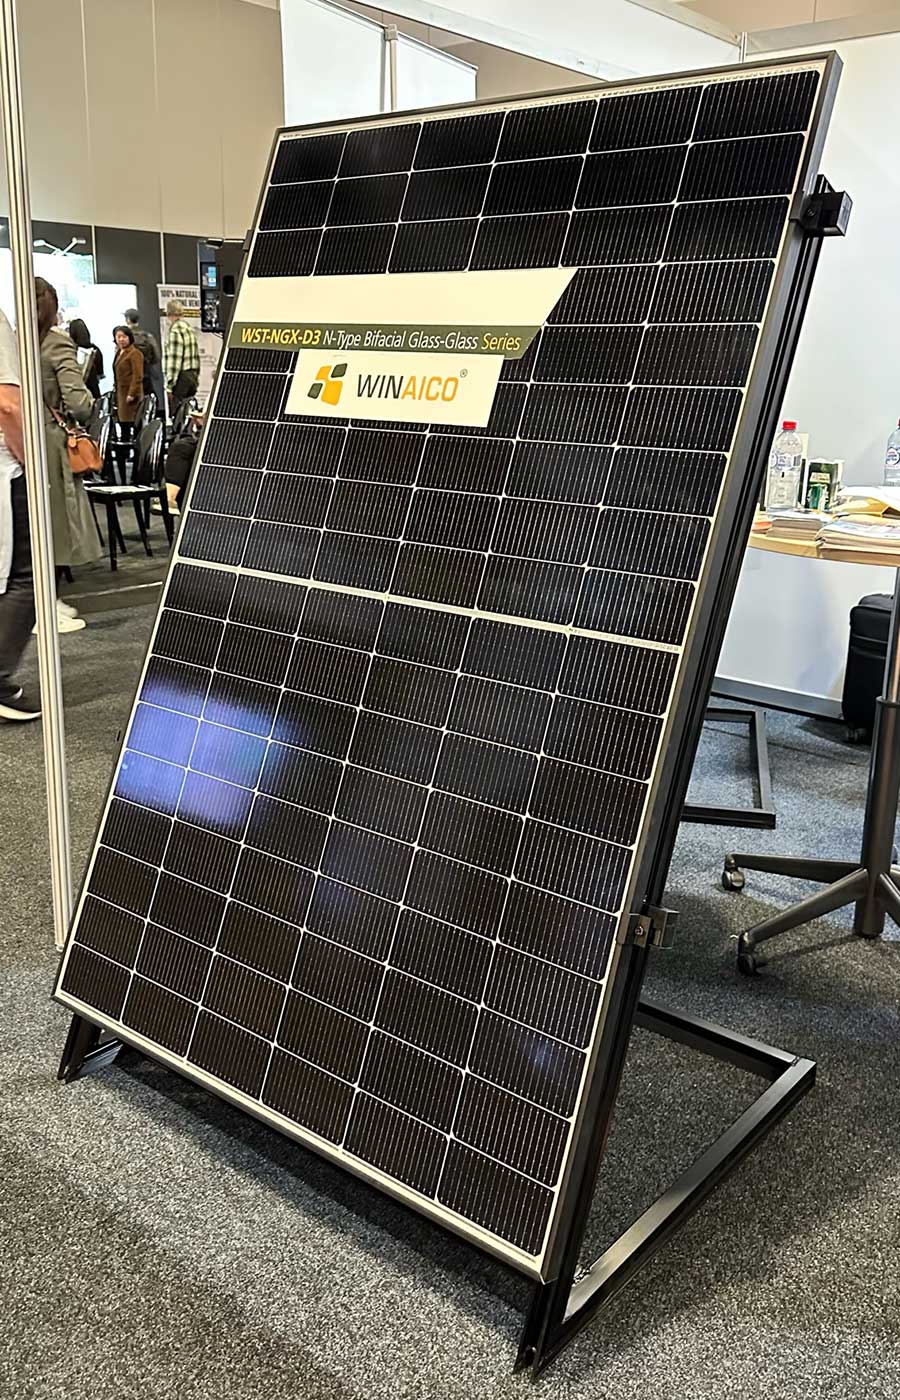 the winaico-wst-ngx-d3 solar panel